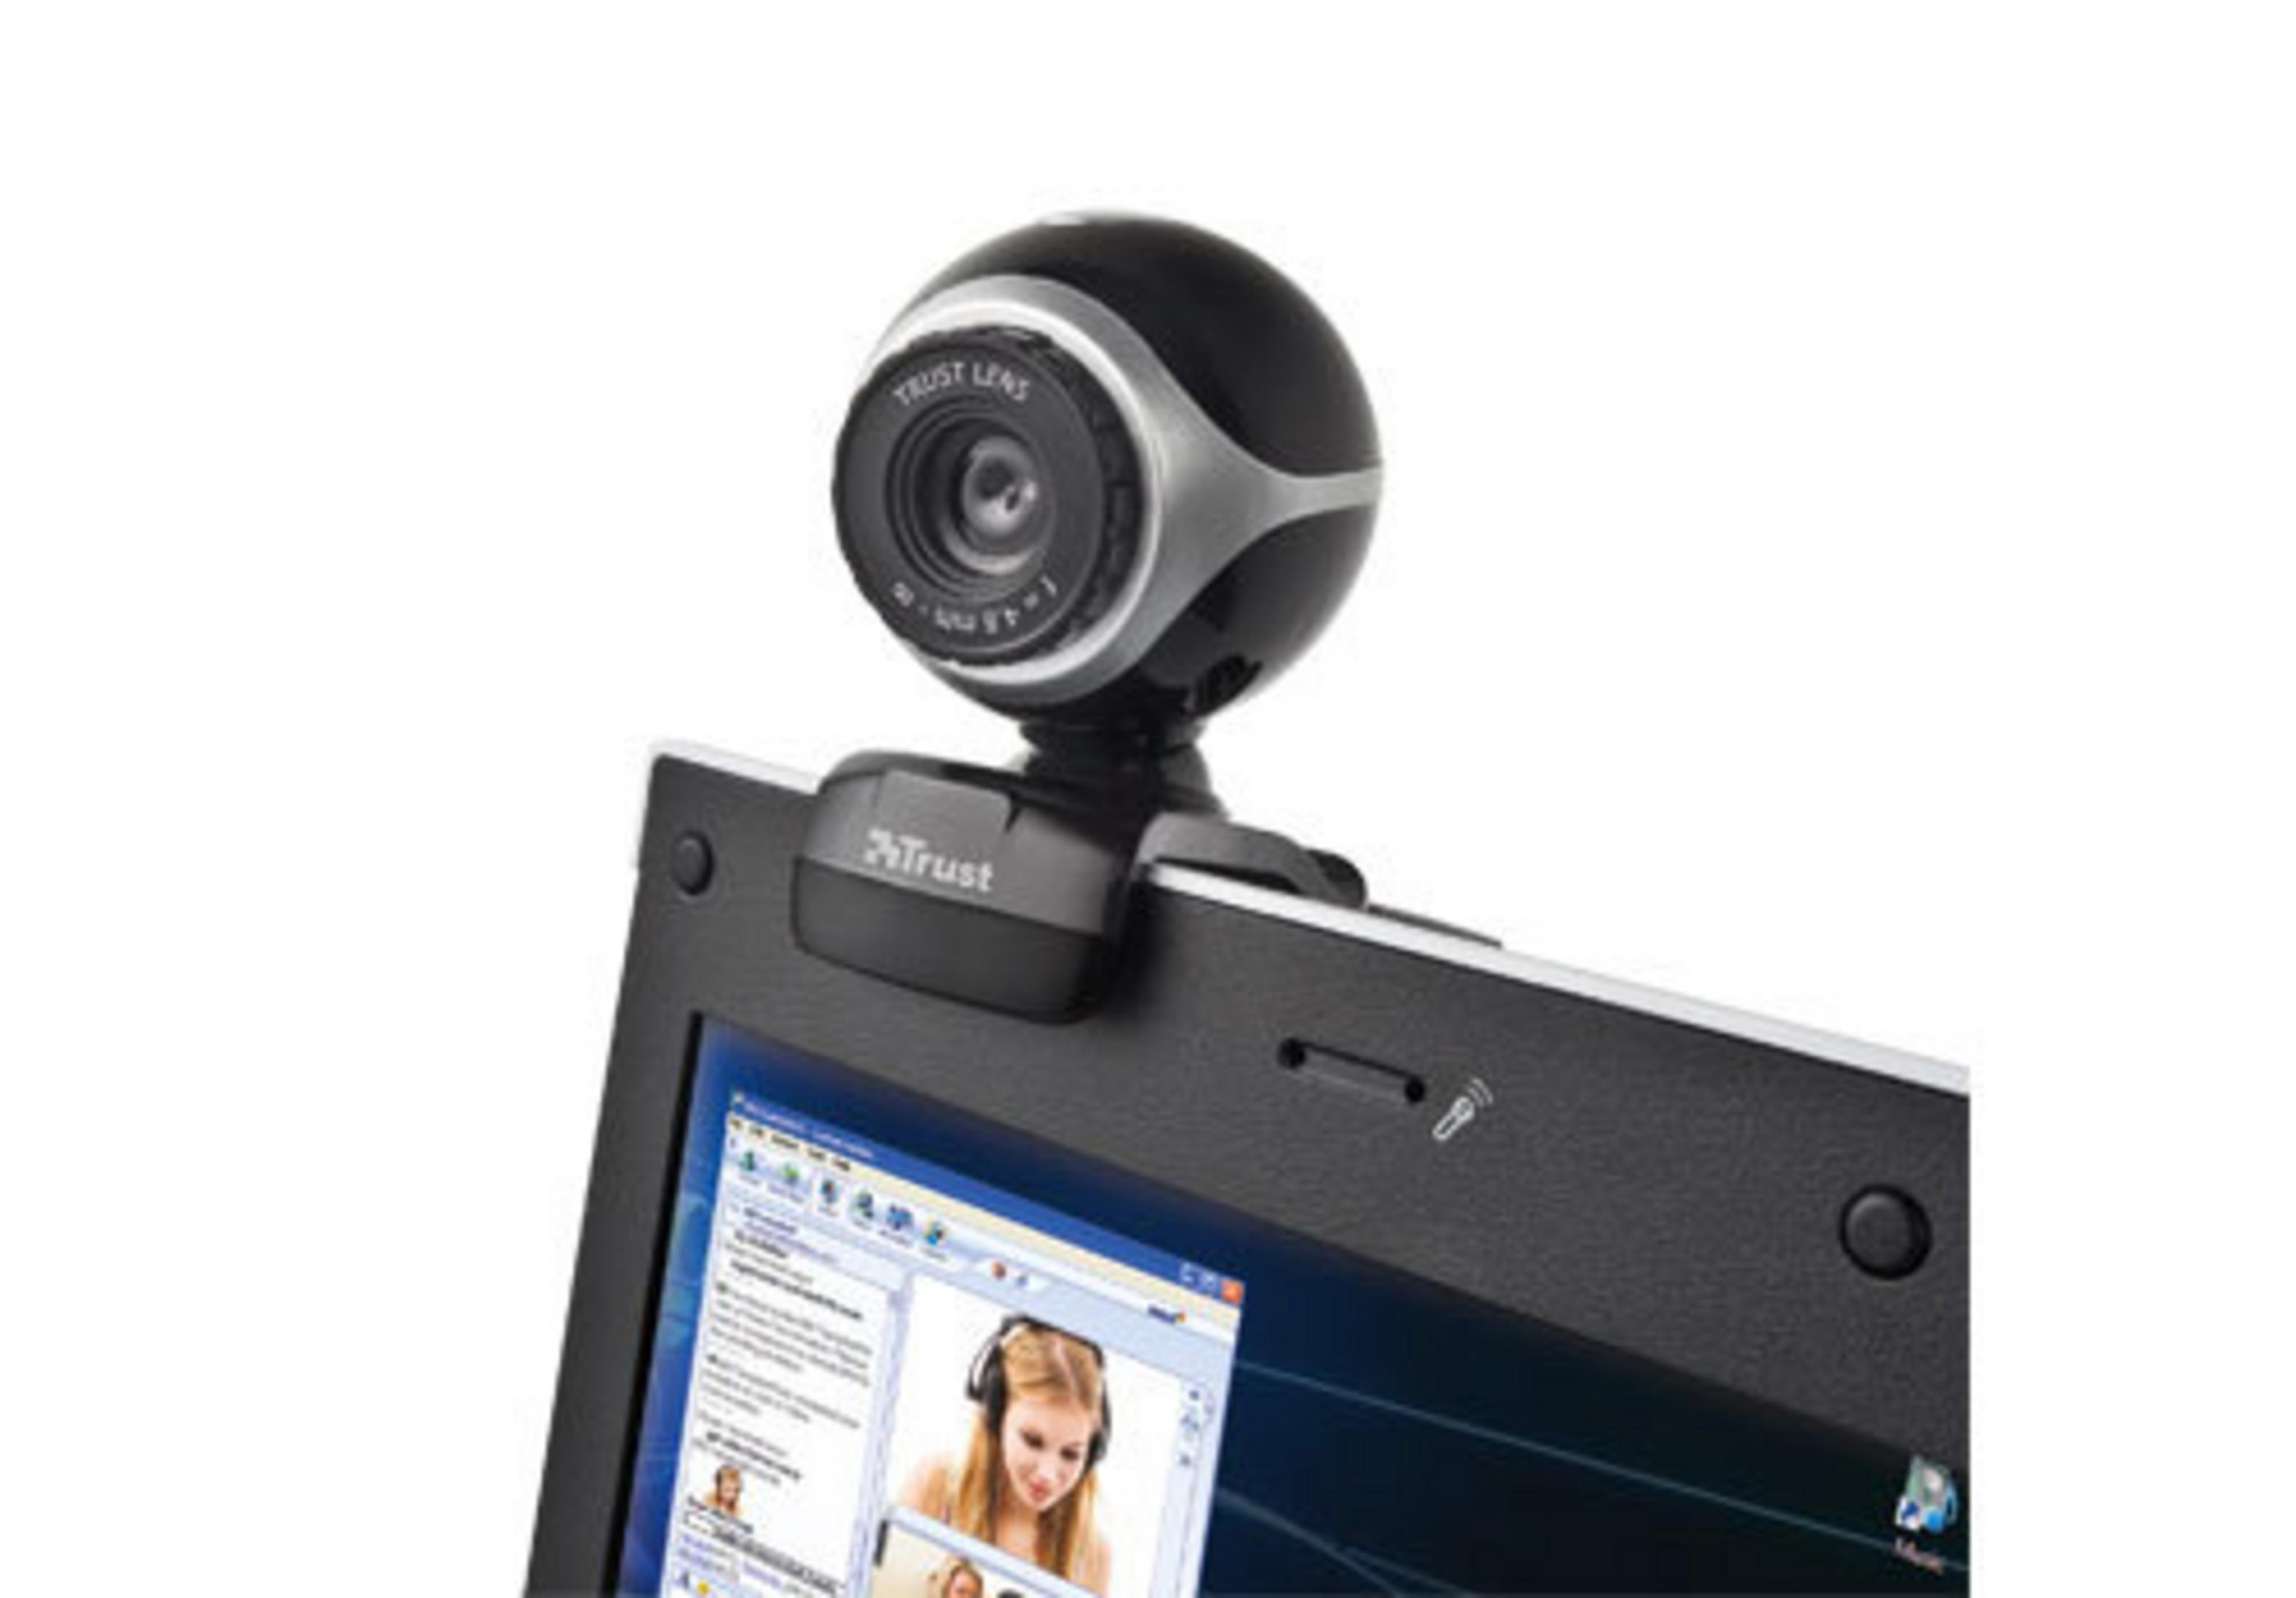 17003 EXIS Webcam TRUST BLACK/SILVER WEBCAM